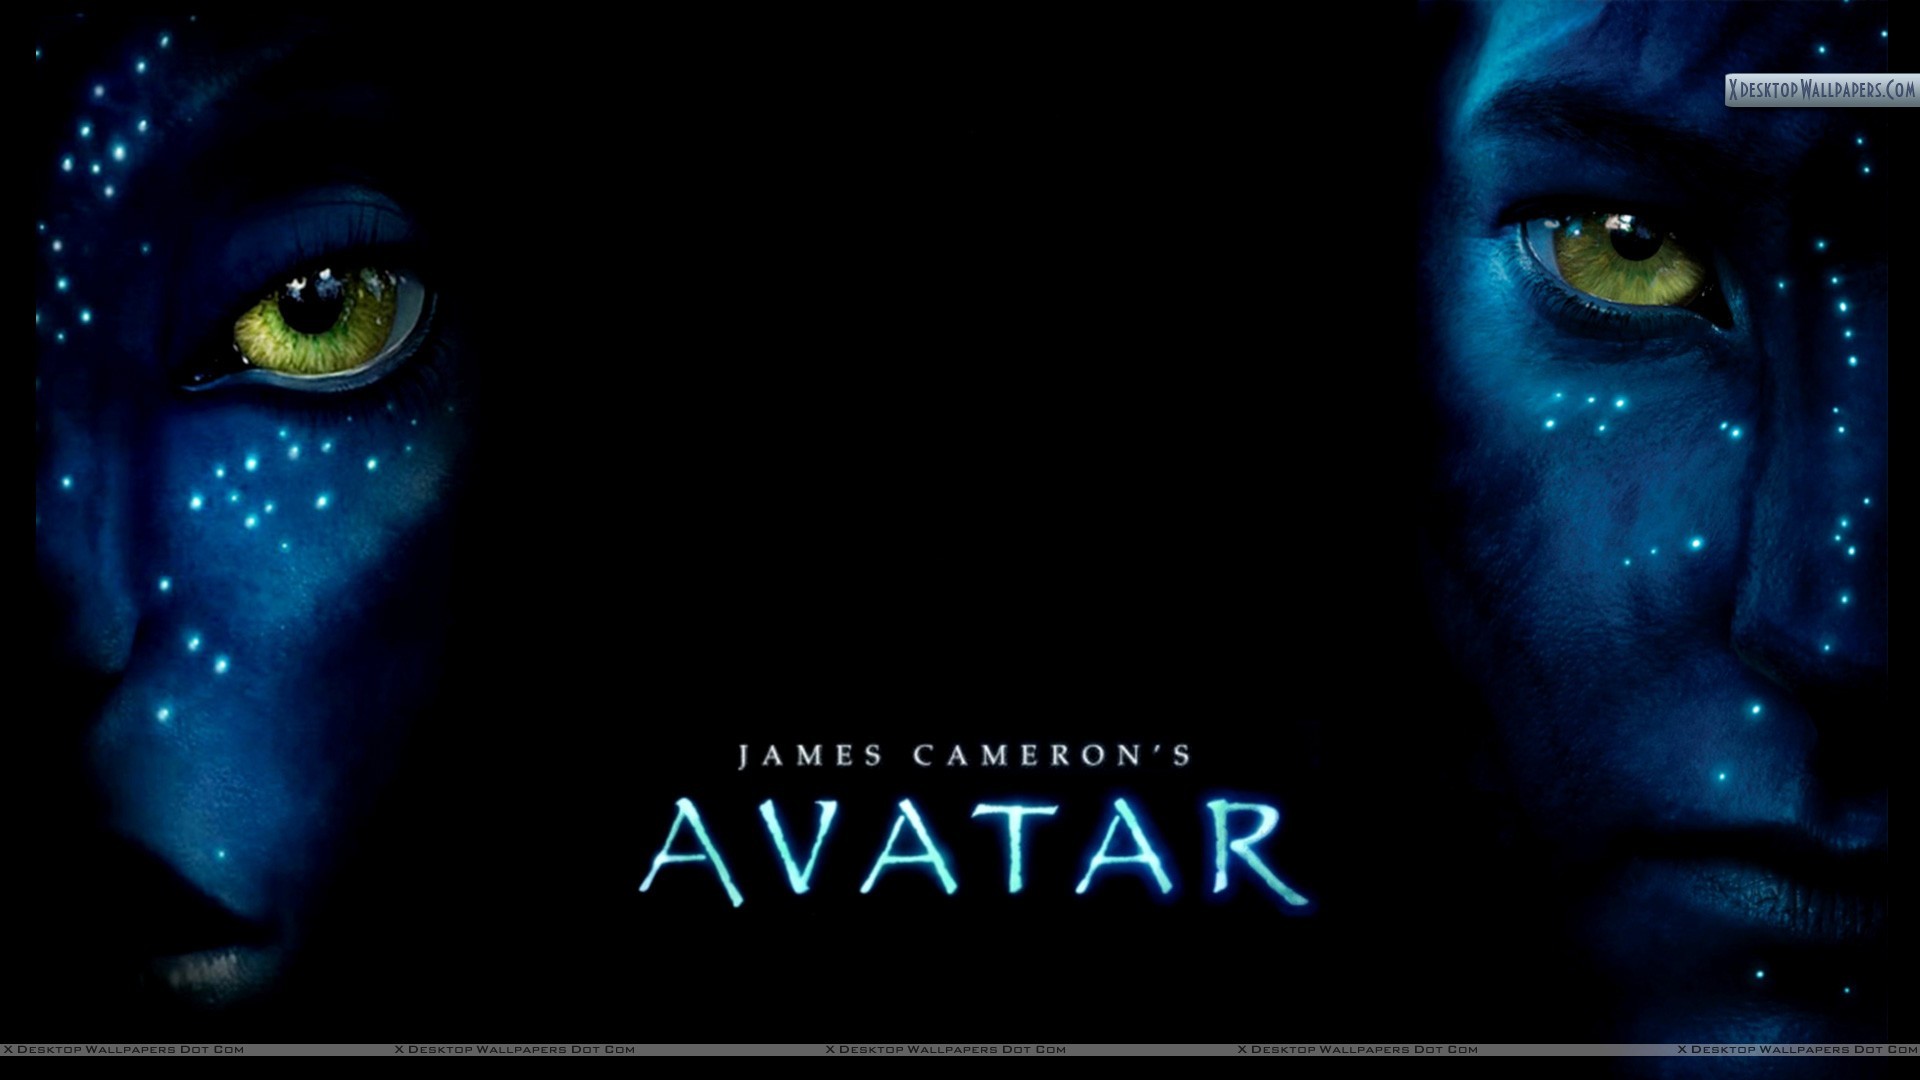 Avatar Movie Poster Wallpaper - Black Cat - HD Wallpaper 